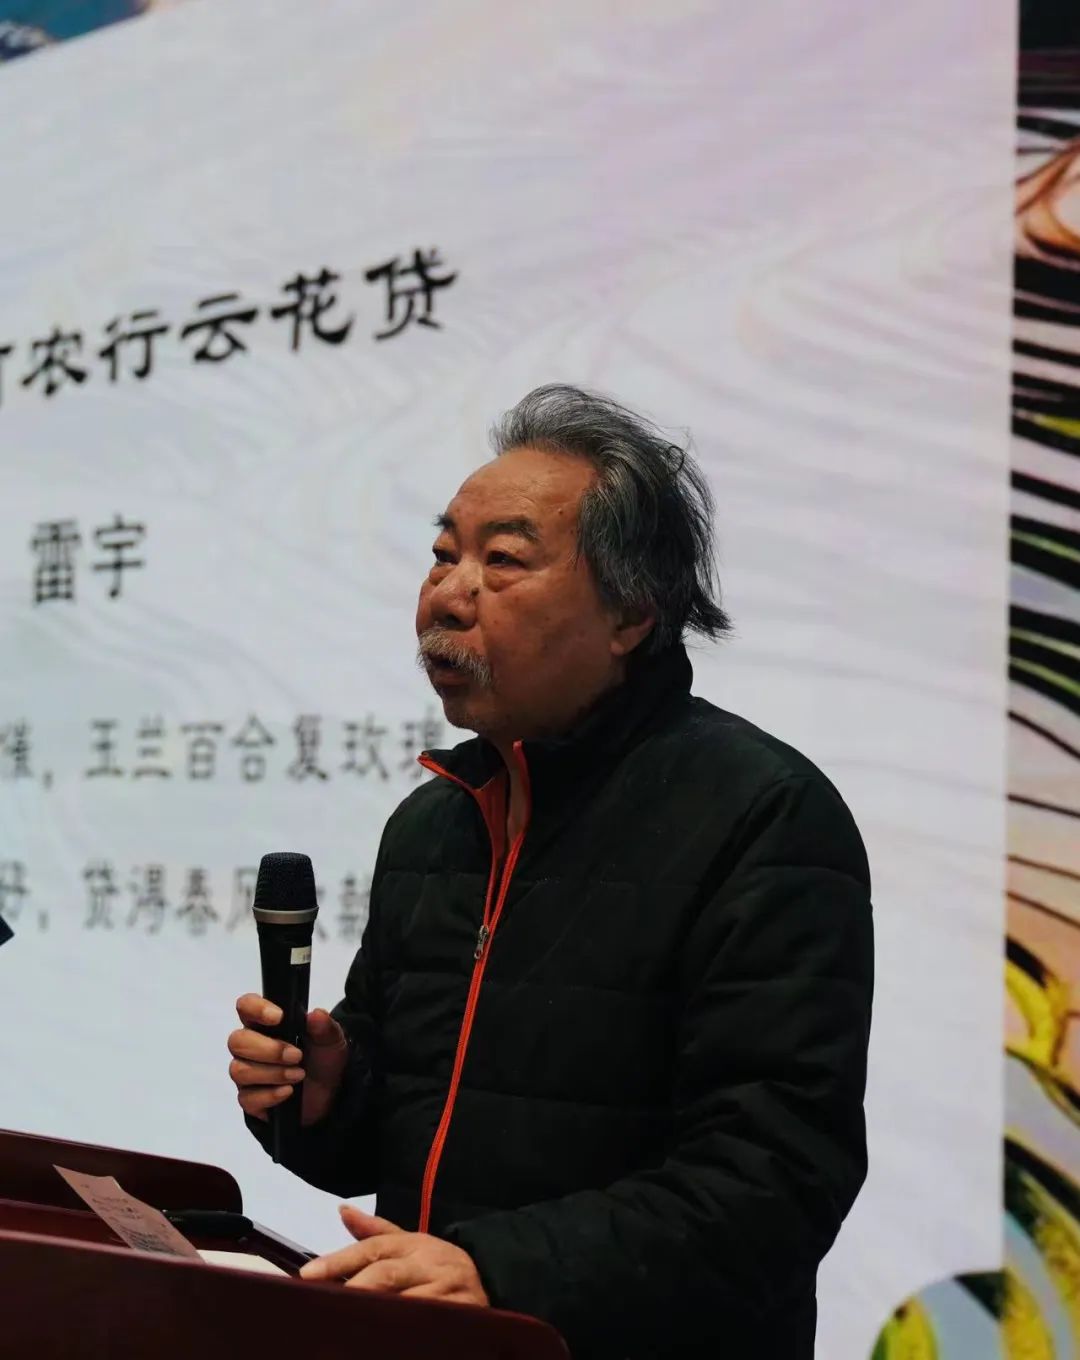 首届“云南农行杯”农行支持乡村振兴和绿色经济发展诗词大赛成功举办